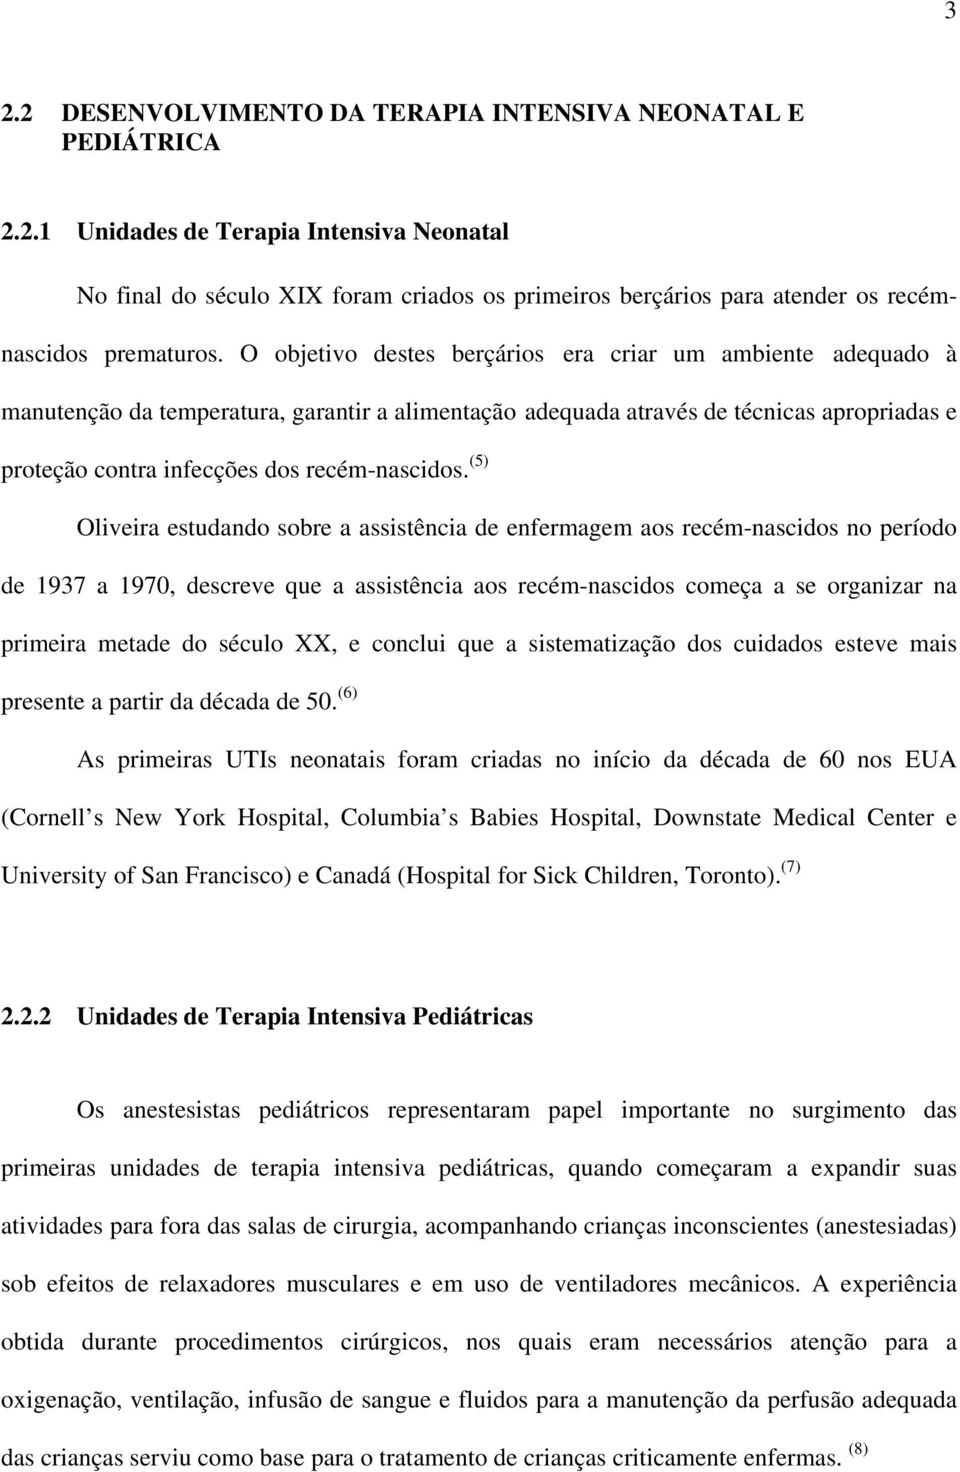 (5) Oliveira estudando sobre a assistência de enfermagem aos recém-nascidos no período de 1937 a 1970, descreve que a assistência aos recém-nascidos começa a se organizar na primeira metade do século